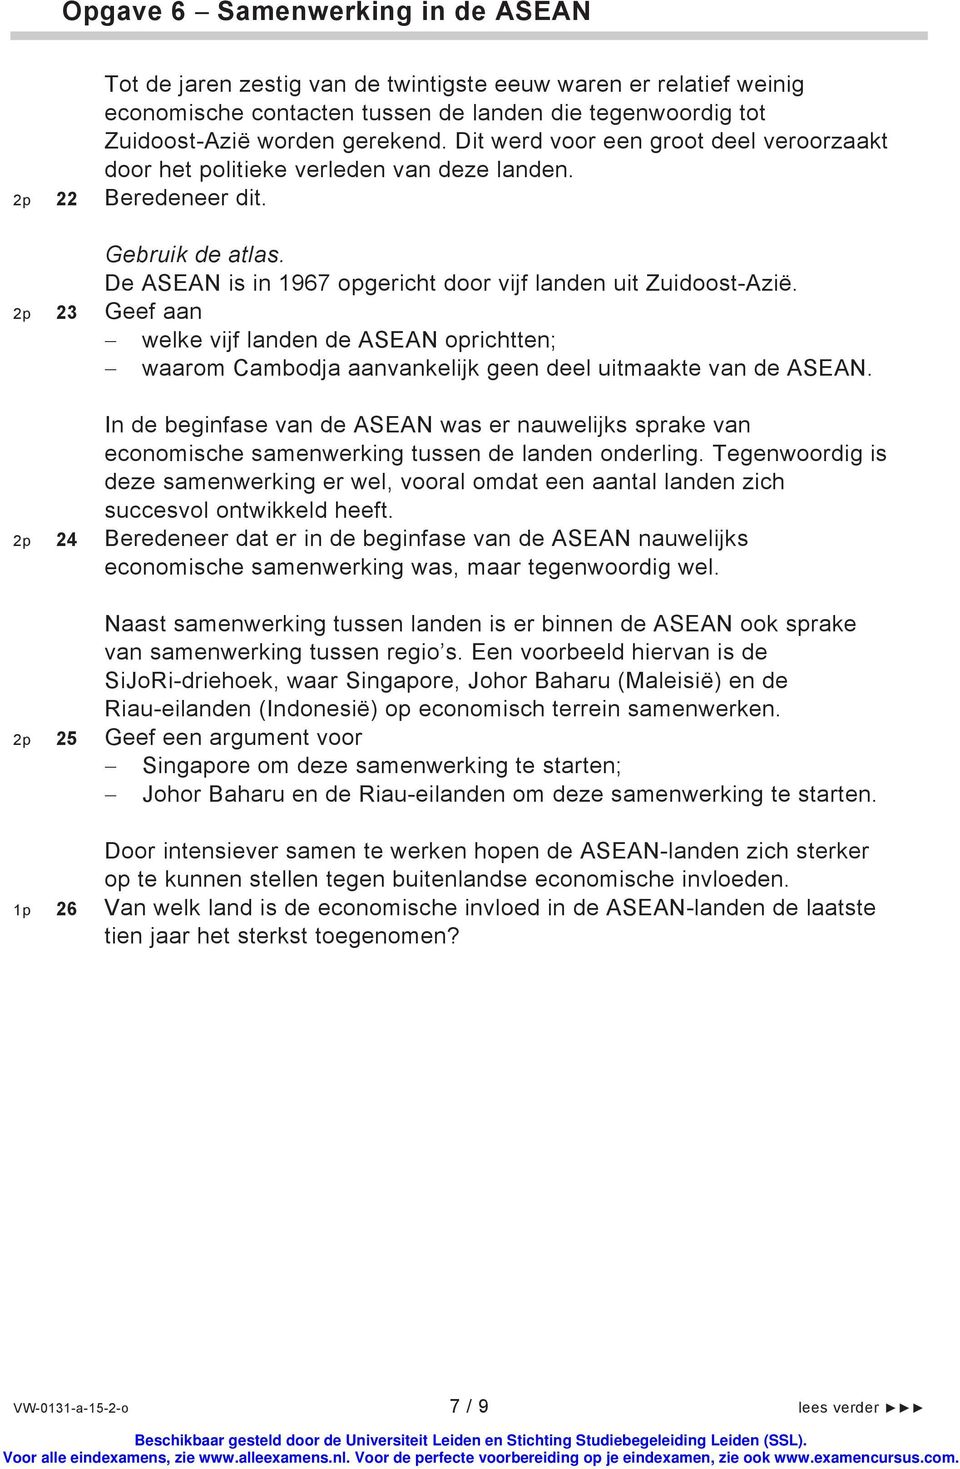 2p 23 Geef aan welke vijf landen de ASEAN oprichtten; waarom Cambodja aanvankelijk geen deel uitmaakte van de ASEAN.